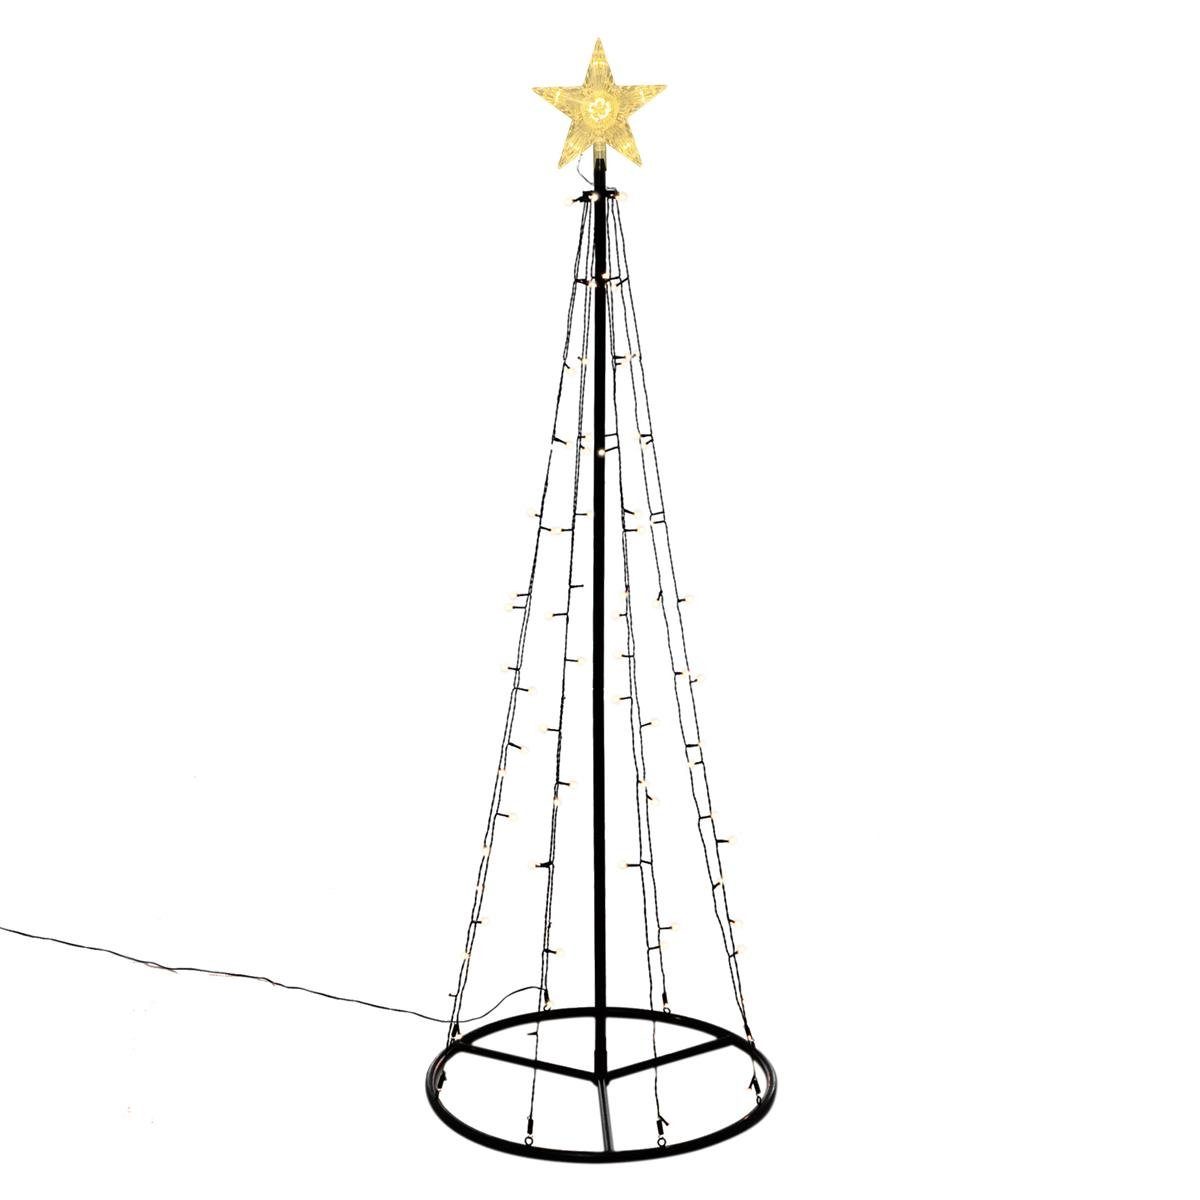 Nipach LED Baum Lichtpyramide 106 LED warmweiß 180 cm Baum mit Stern Timer Weihnachten, LED fest integriert, Warmweiß